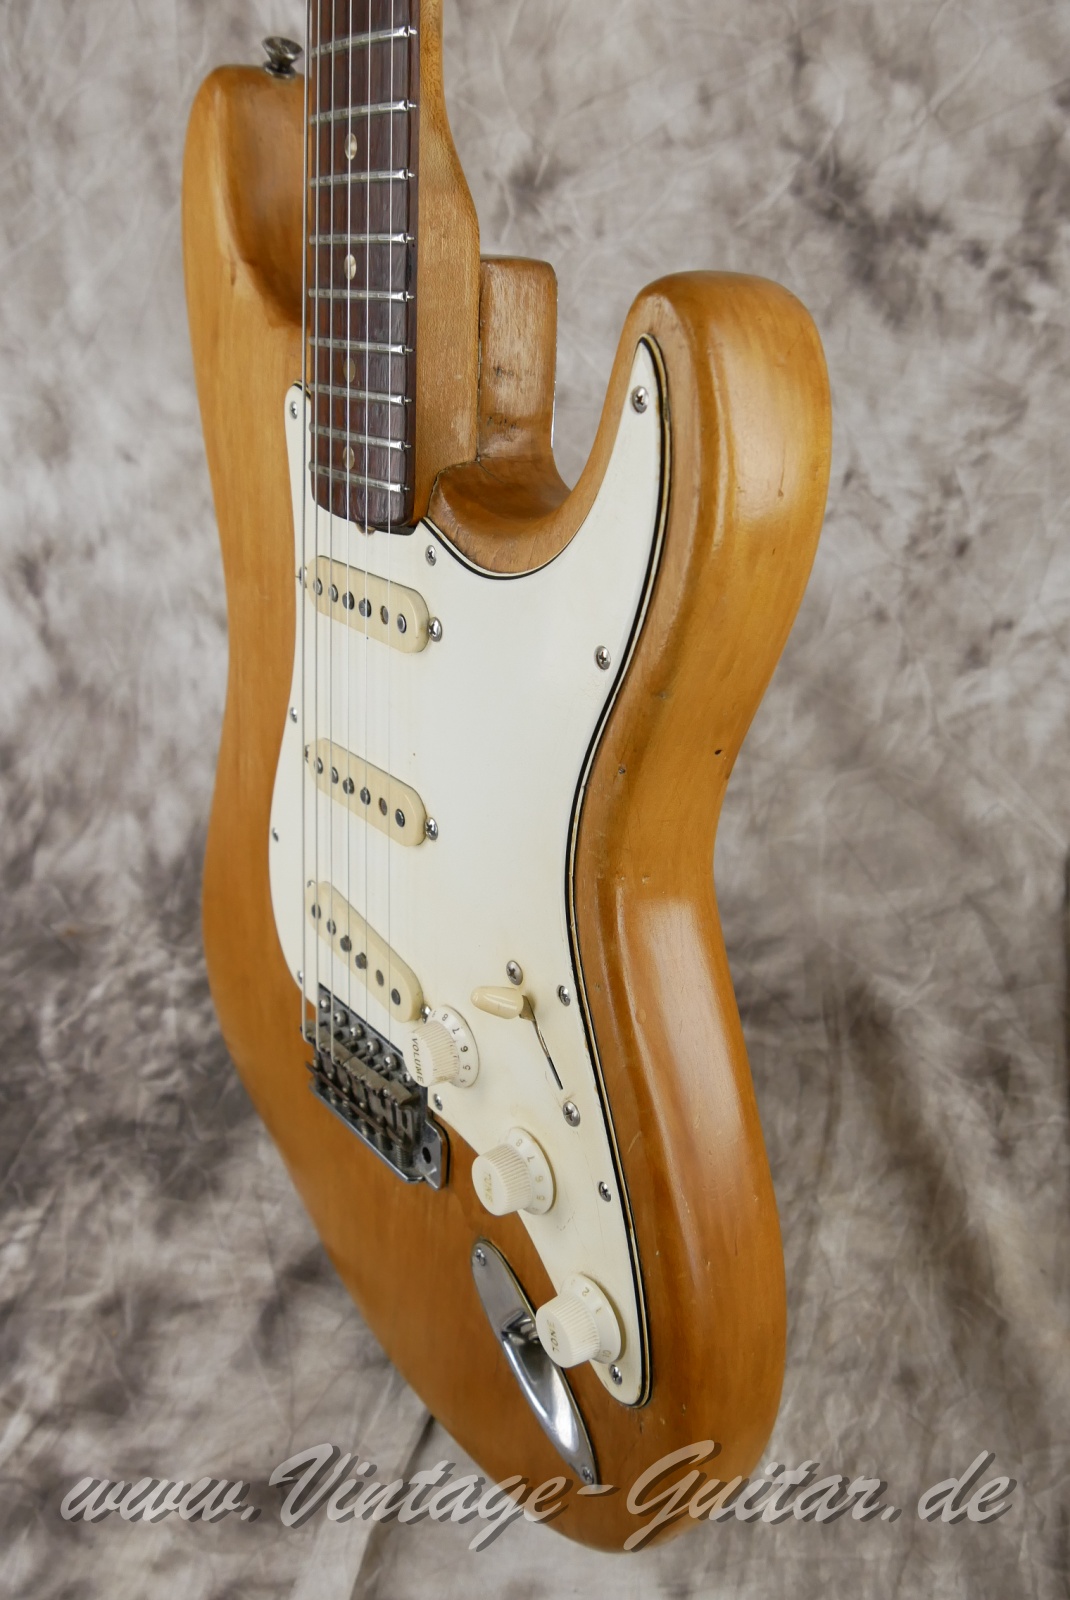 Fender_Stratocaster_body_stripped_1966-010.JPG